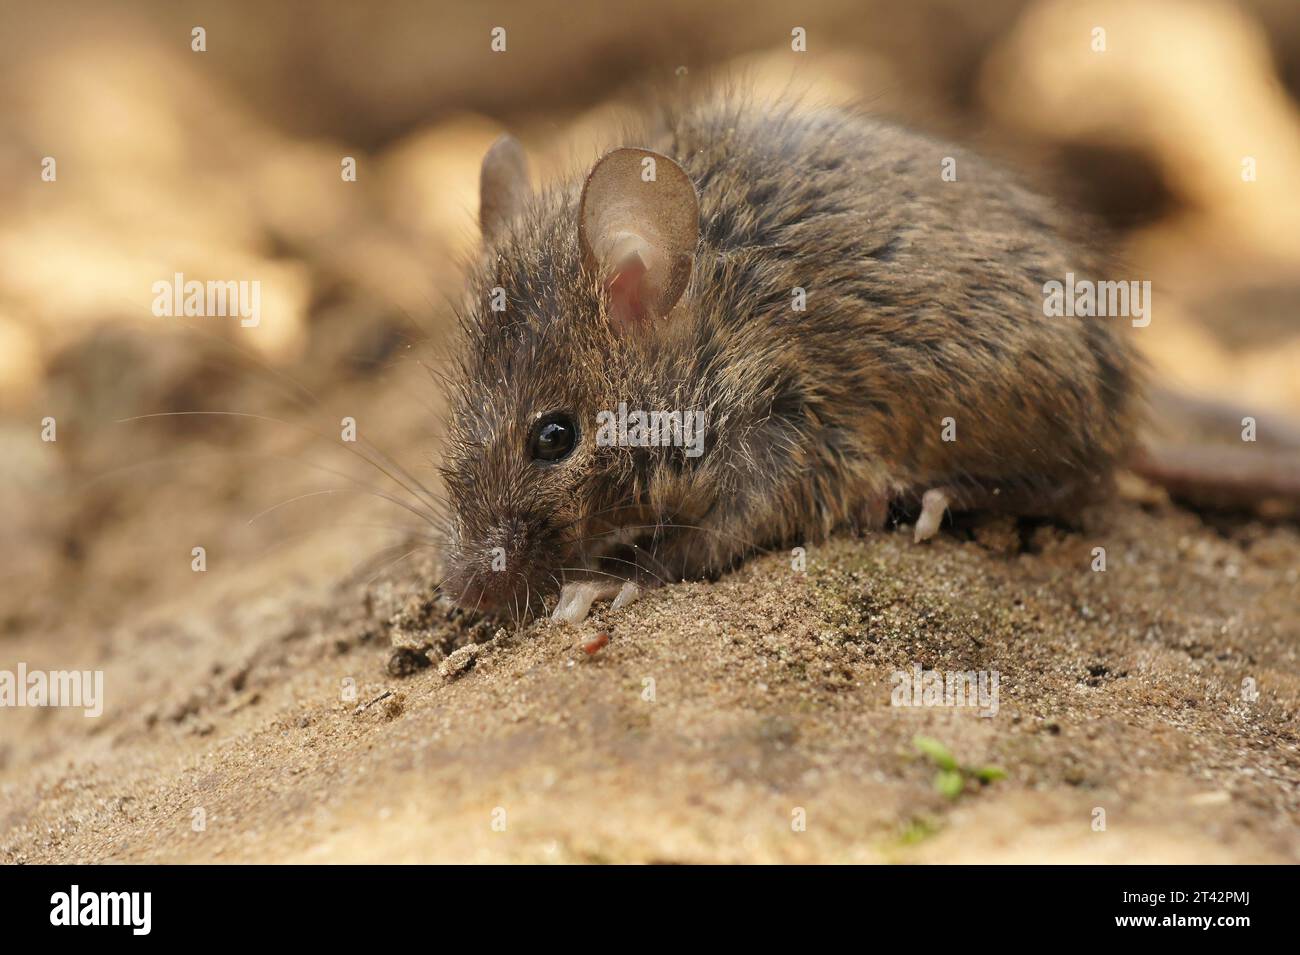 Gros plan naturel sur une jeune souris commune européenne molletonnée juvénile Mus musculus Banque D'Images